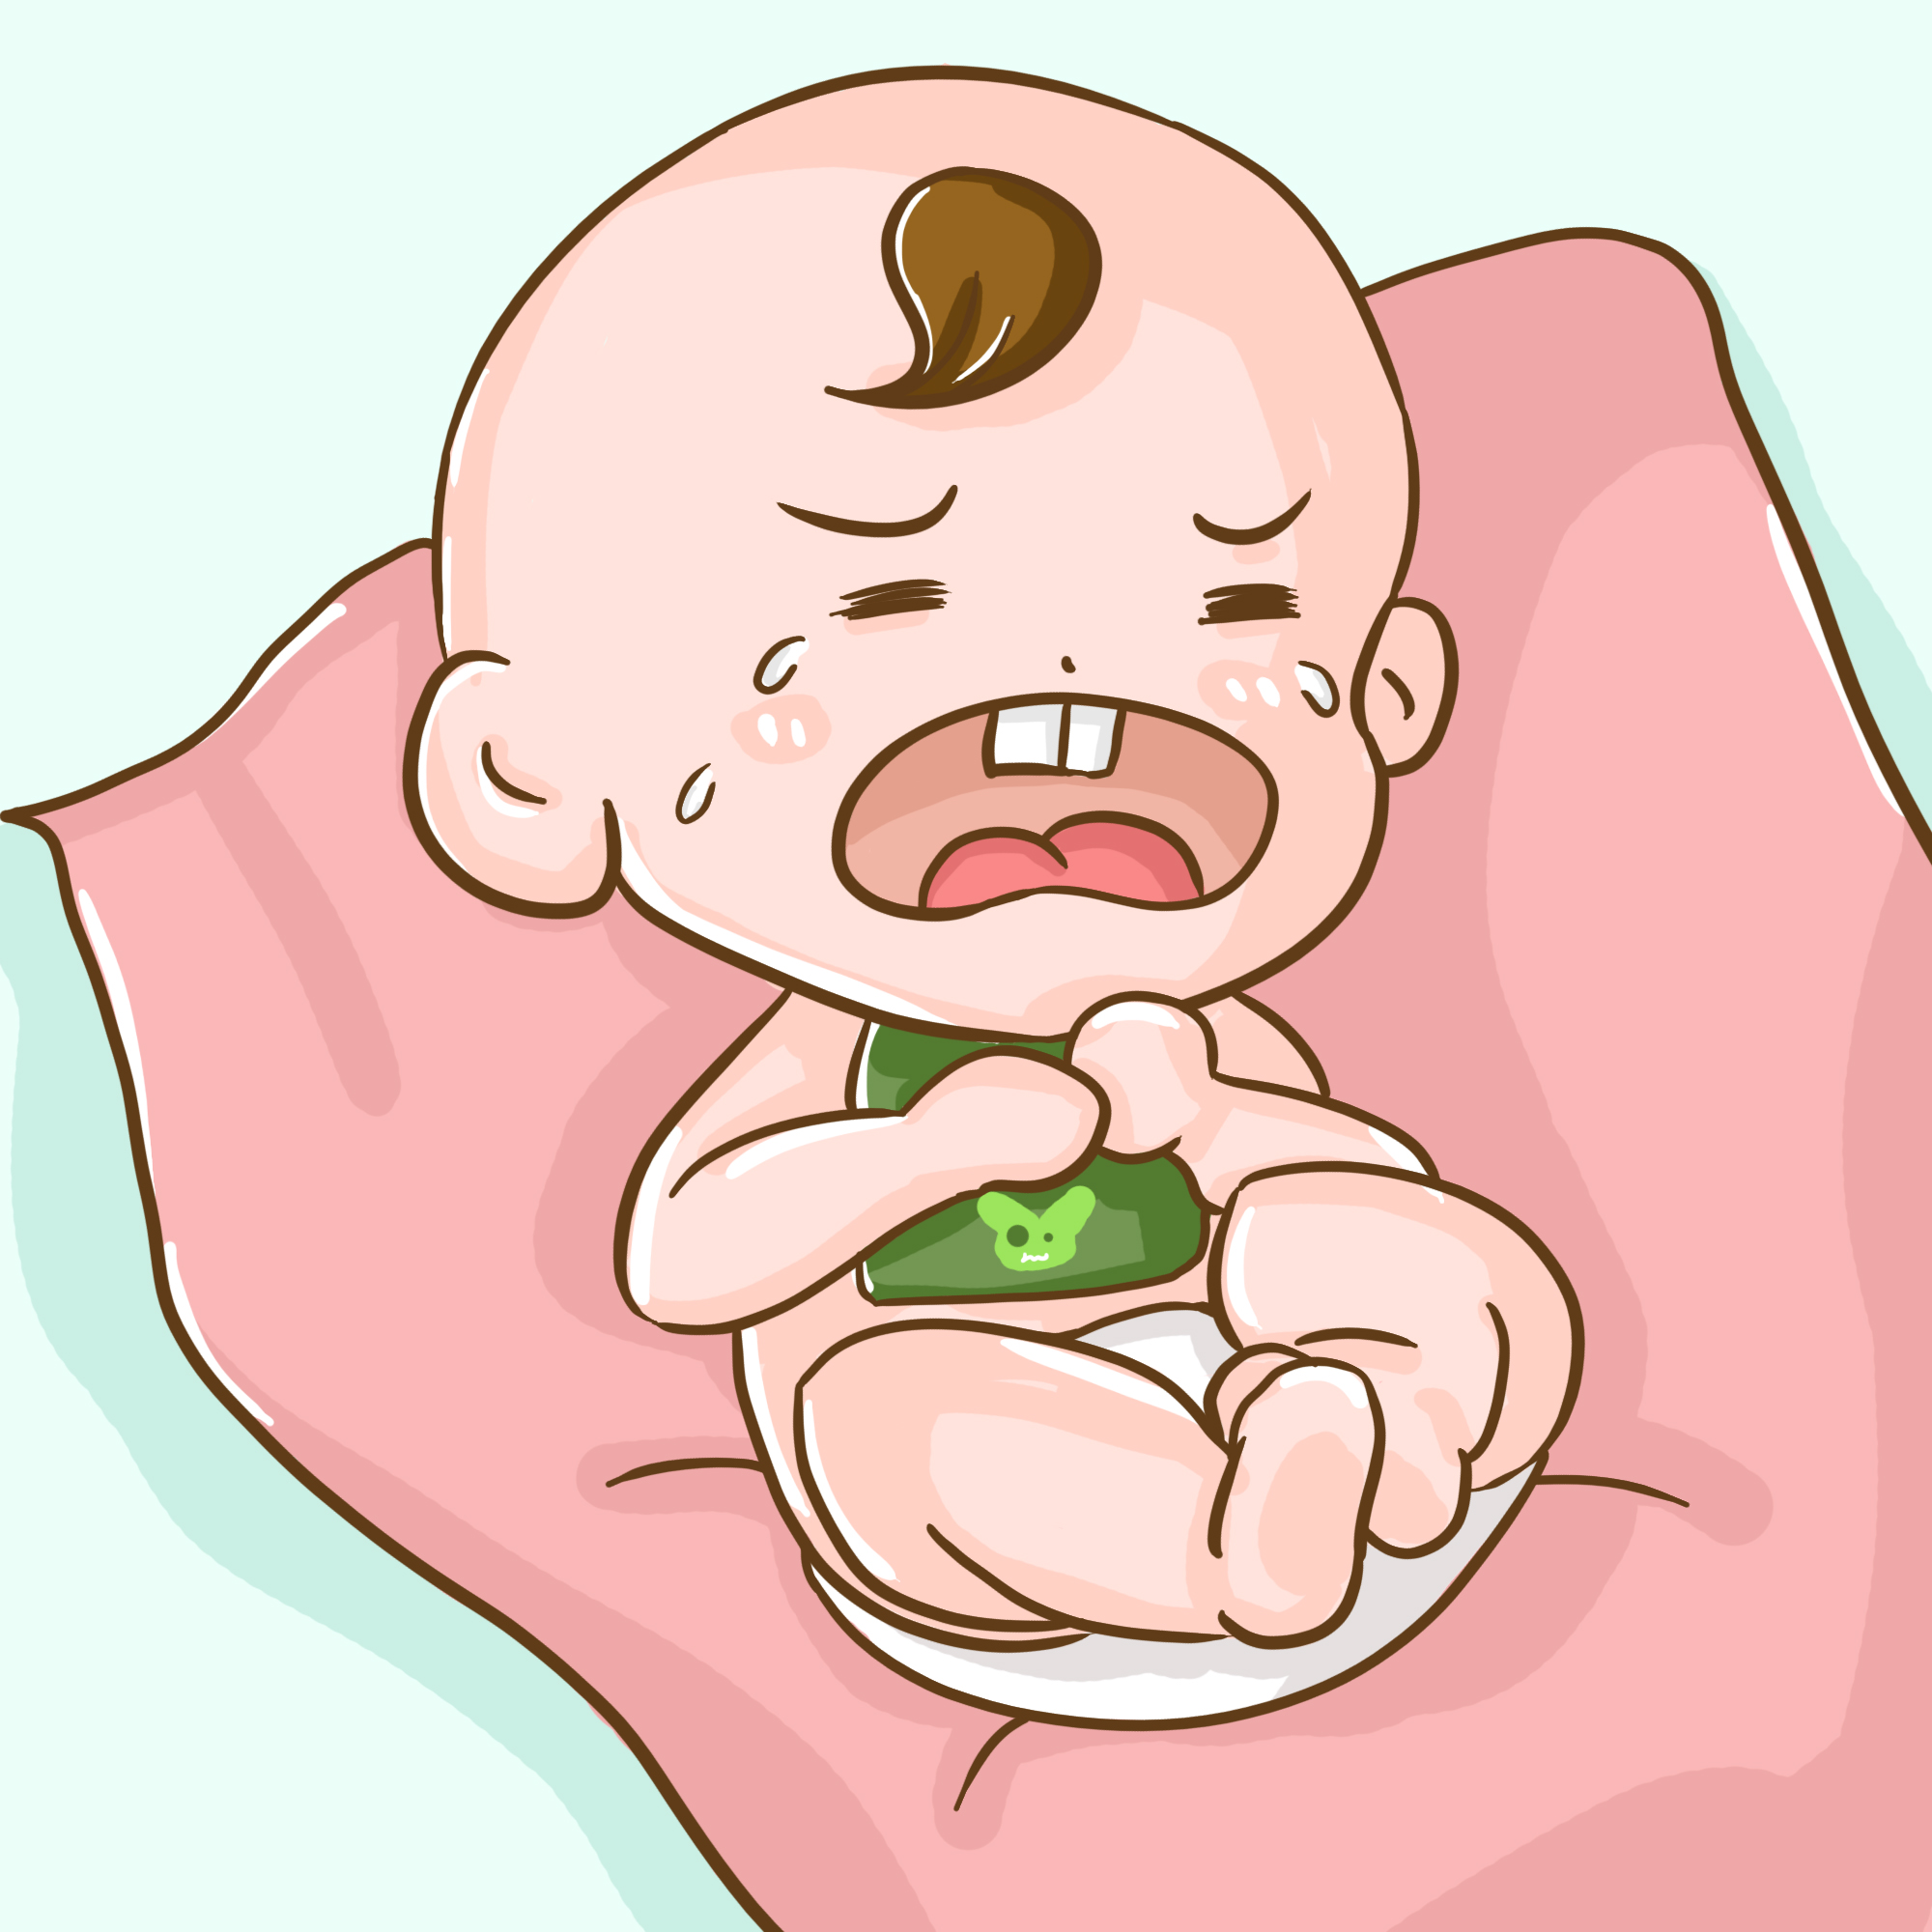 宝宝肚子胀气呕吐怎么办？这样做效果很不错